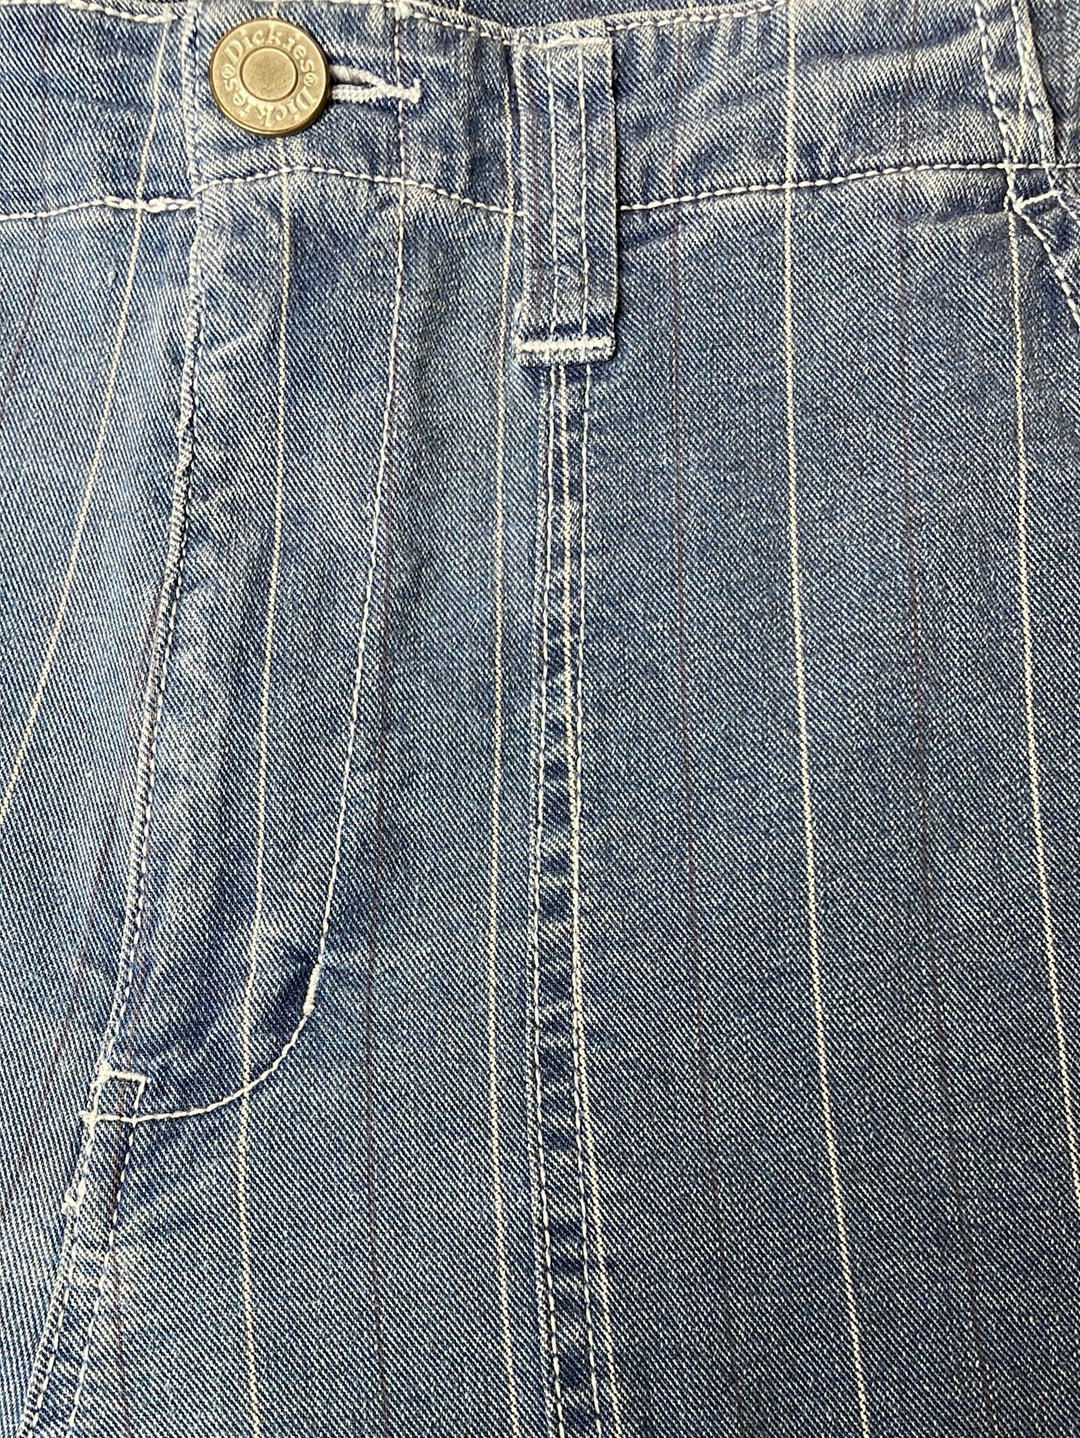 Vintage Dickies Jeans 